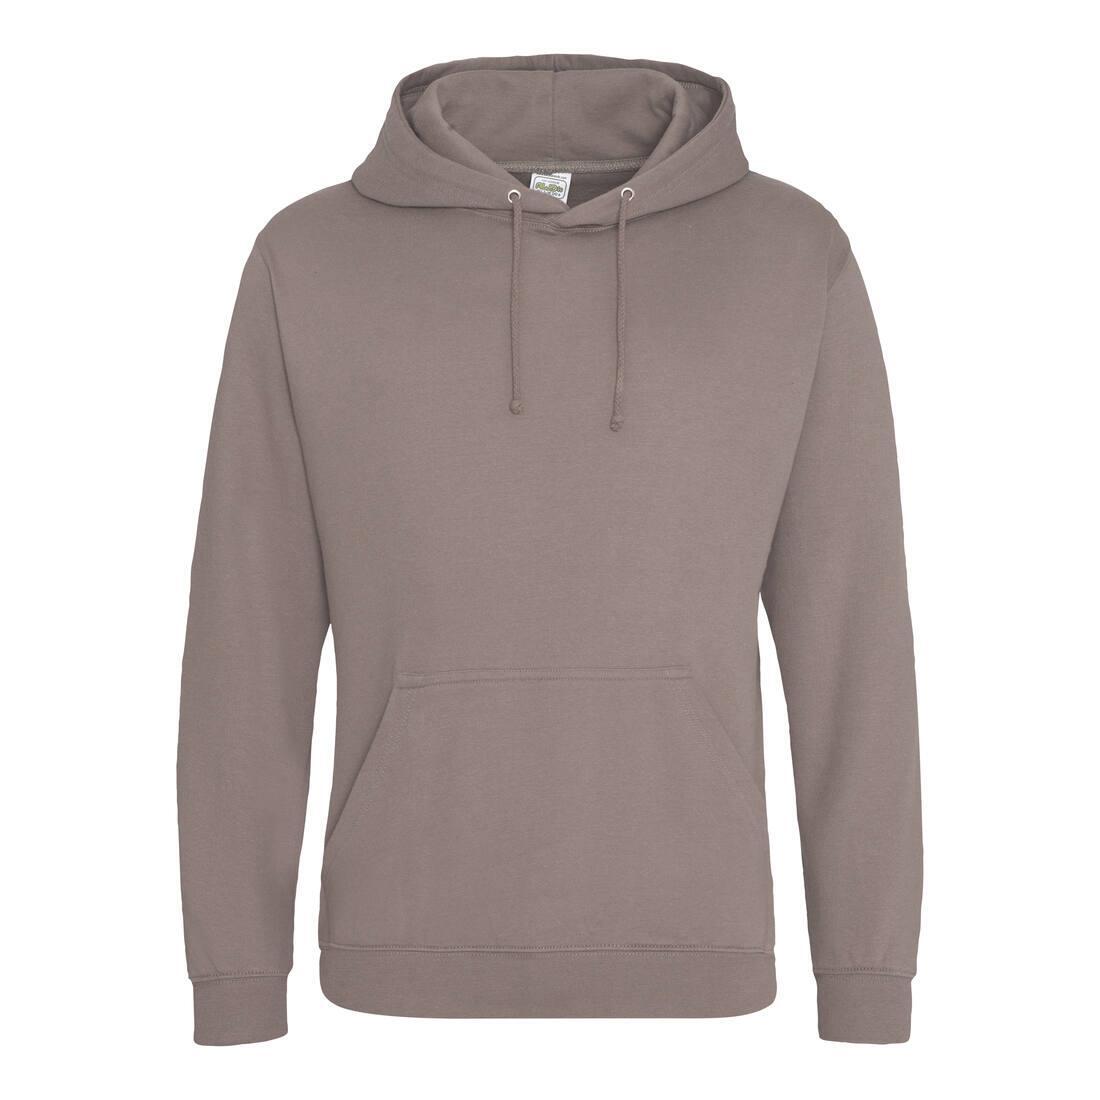 Heren hoodie mocha bruin perfect voor bedrukking van logo, tekst, foto